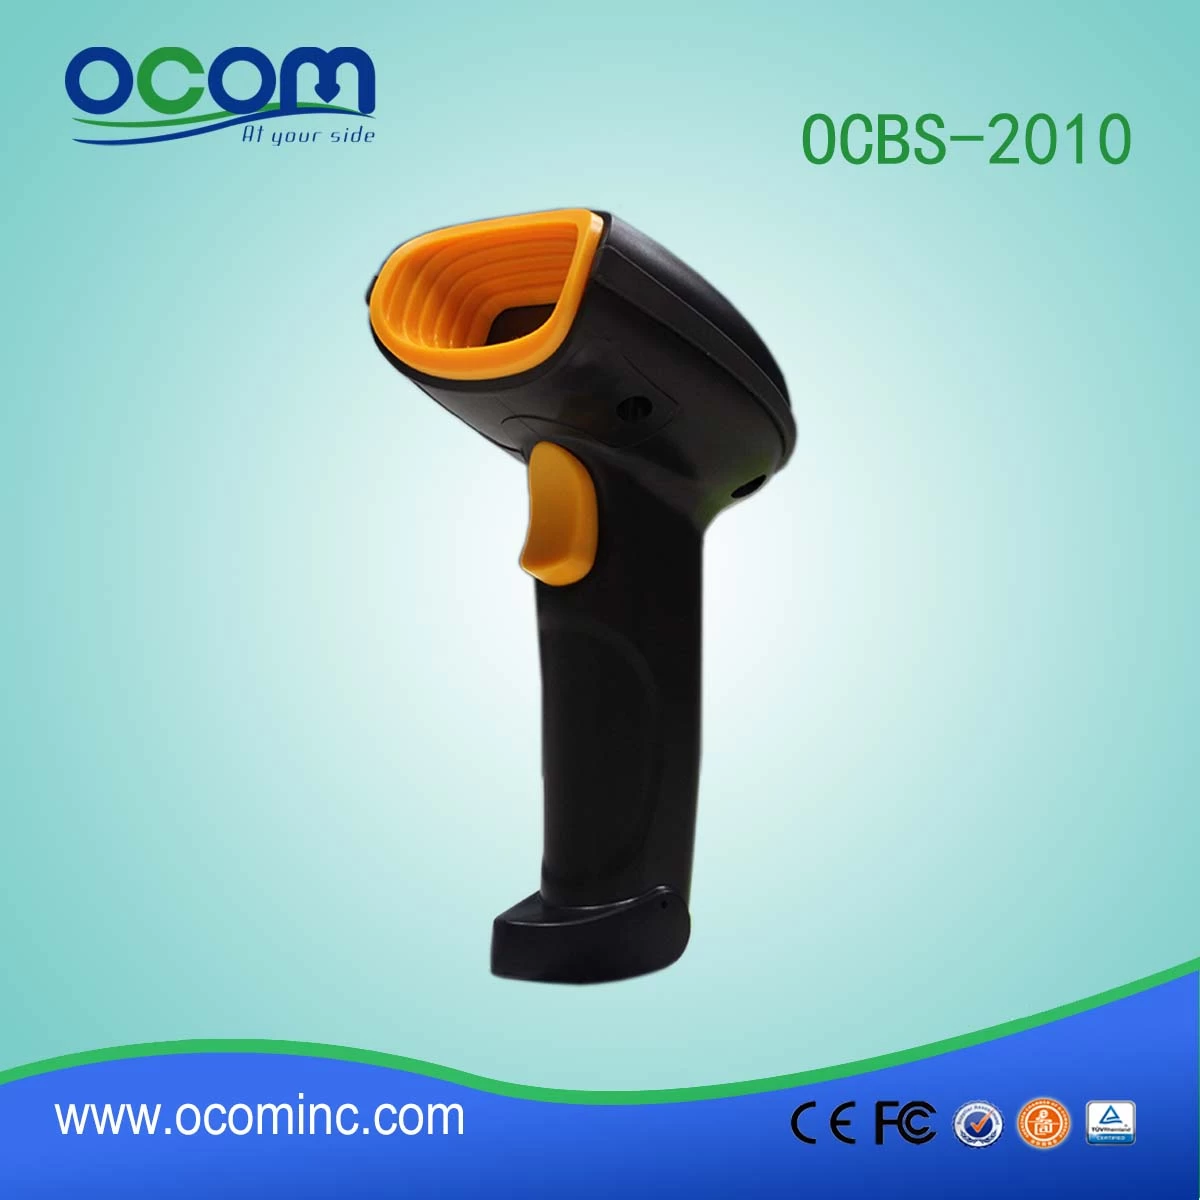 OCBS-2010: 2016 Hot Handheld QR Code Scanner Module USB